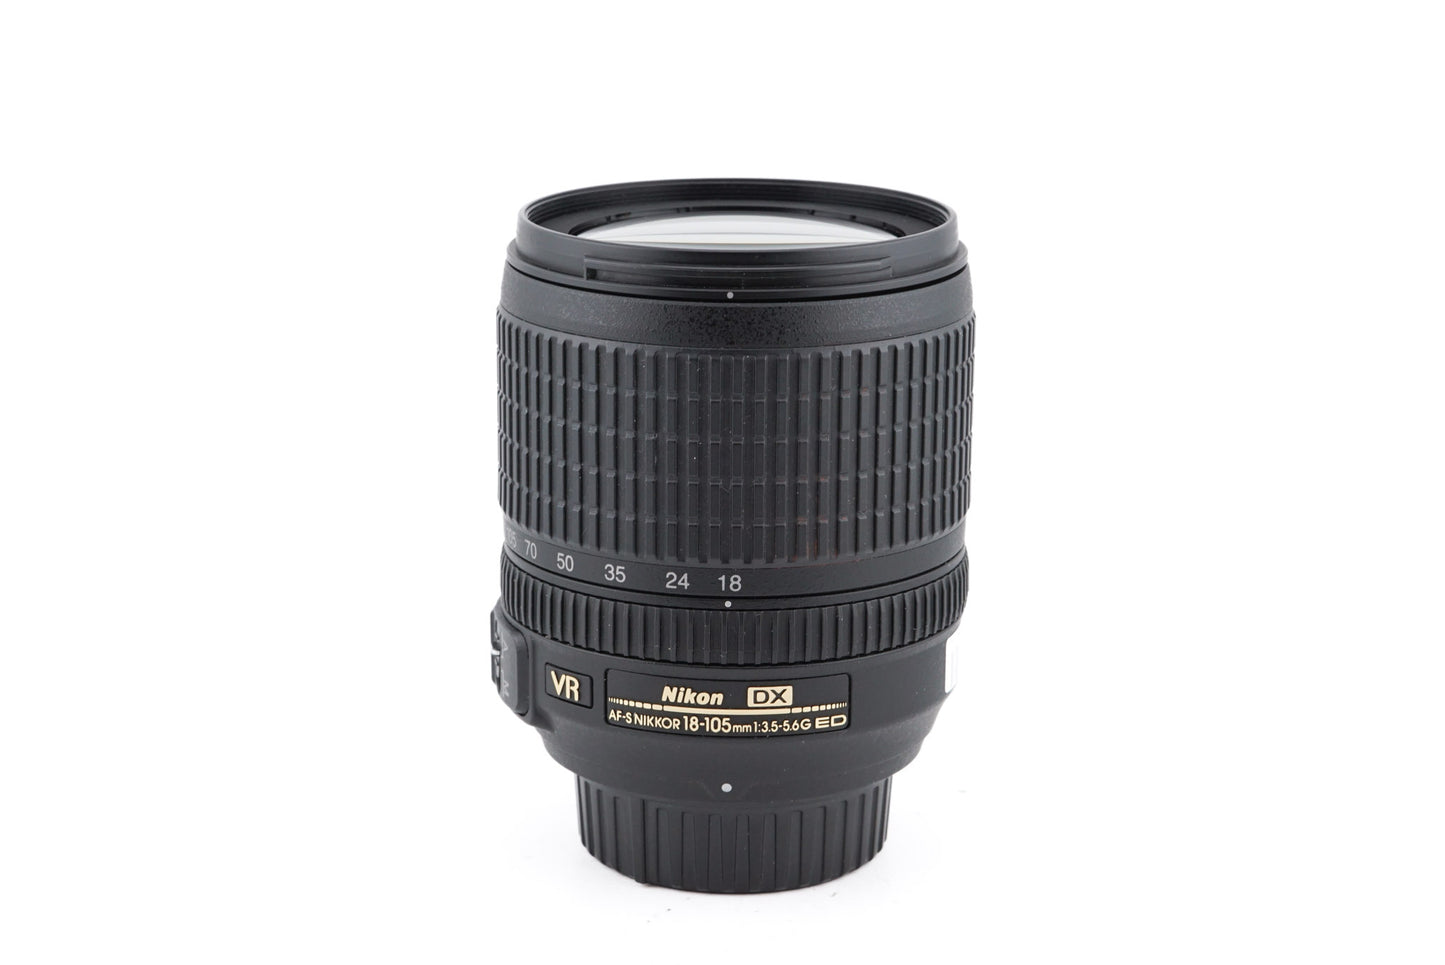 Nikon 18-105mm f3.5-5.6 AF-S Nikkor G ED VR - Lens